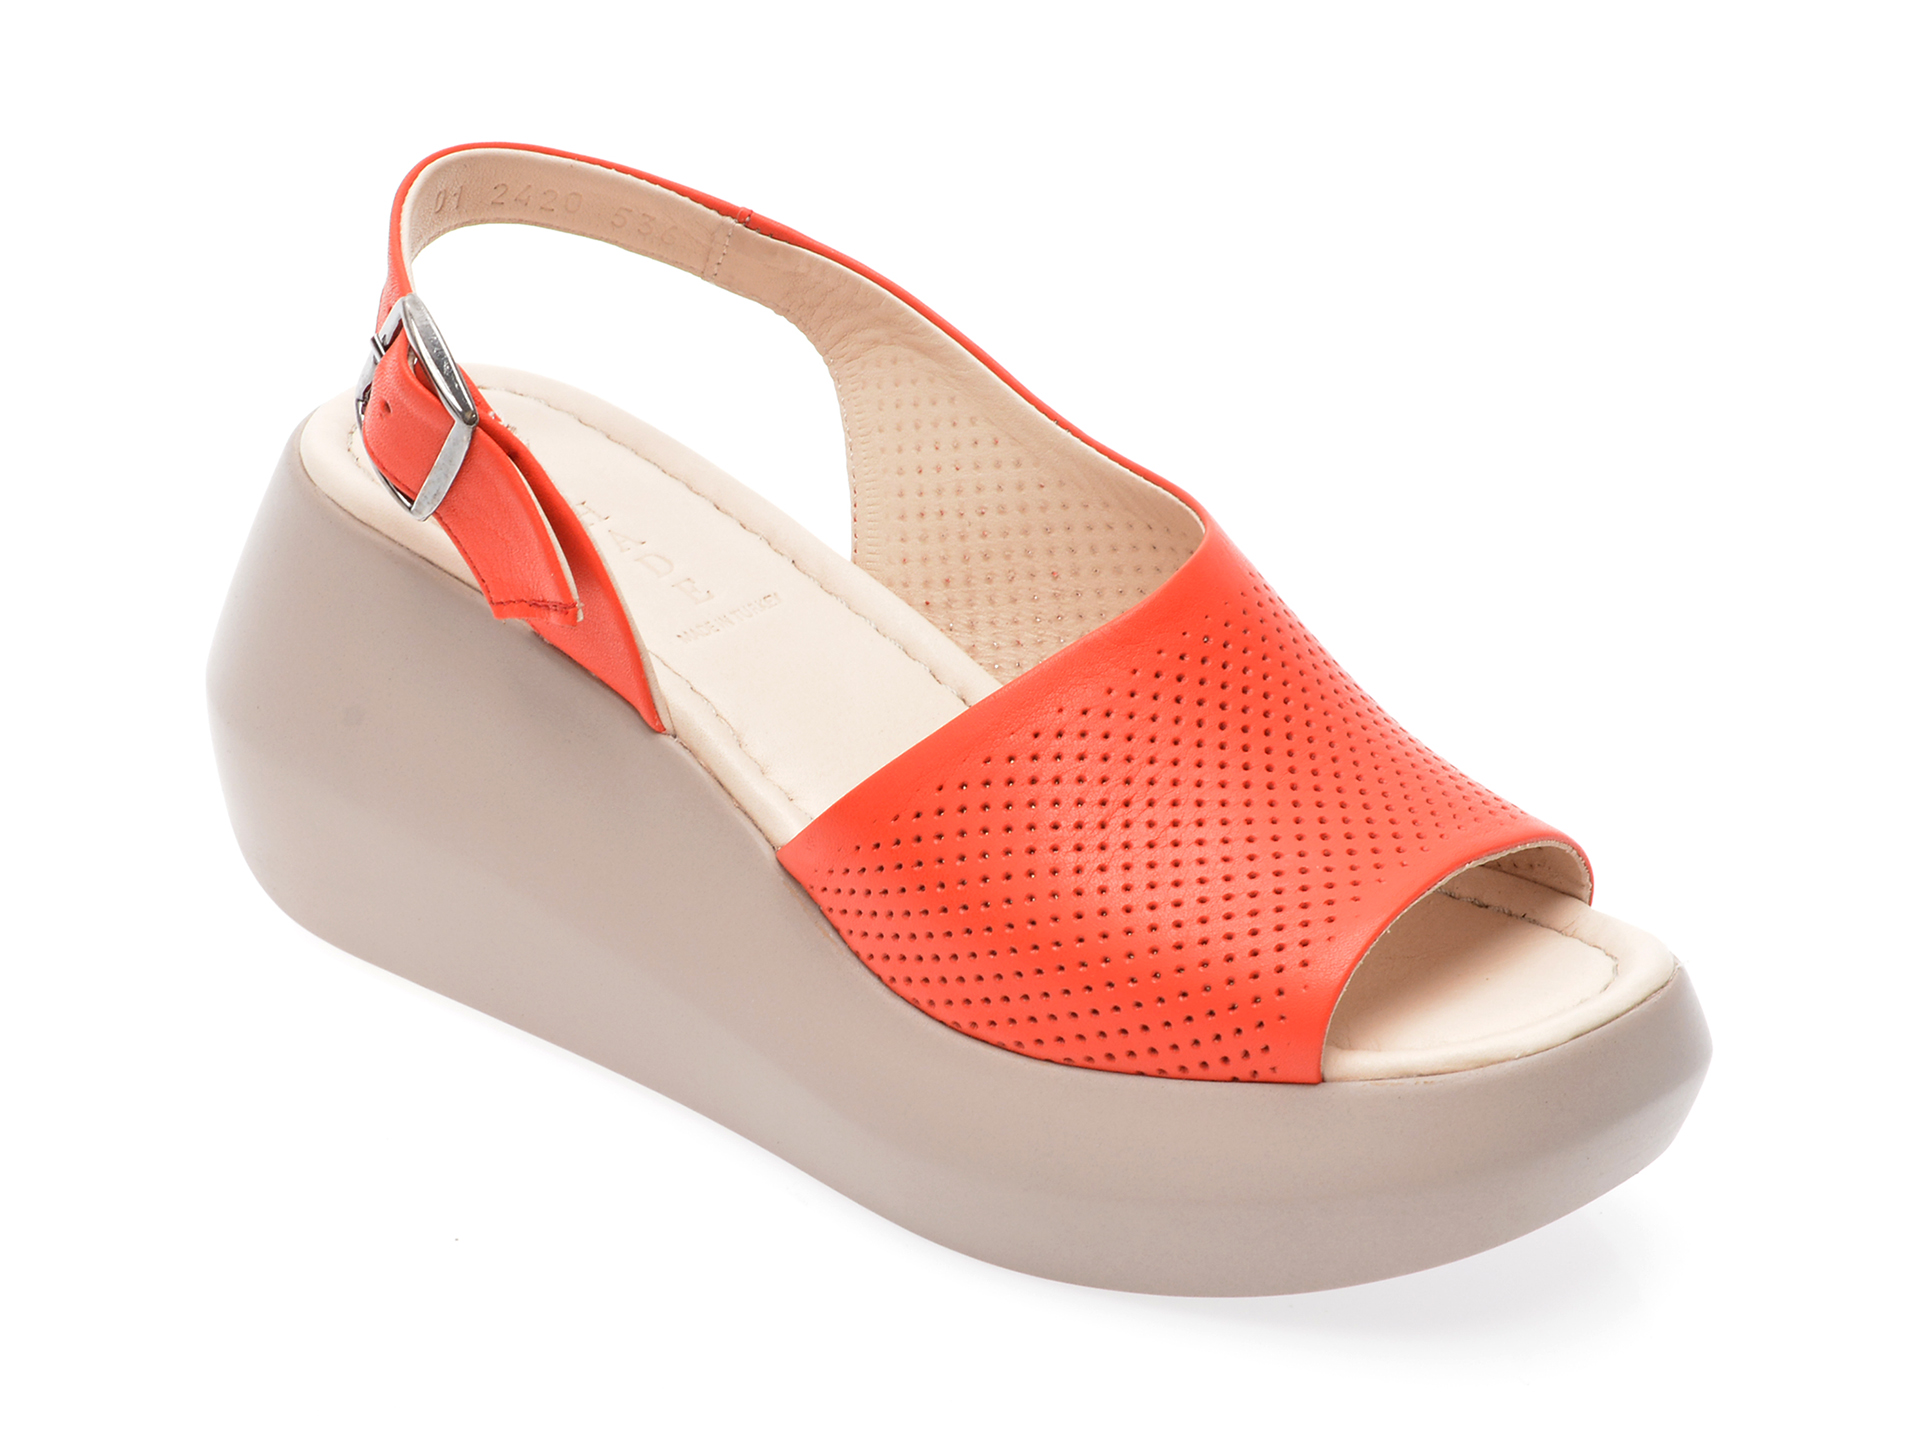 Sandale OSHADE rosii, 002242Z, din piele naturala imagine reduceri black friday 2021 /femei/sandale